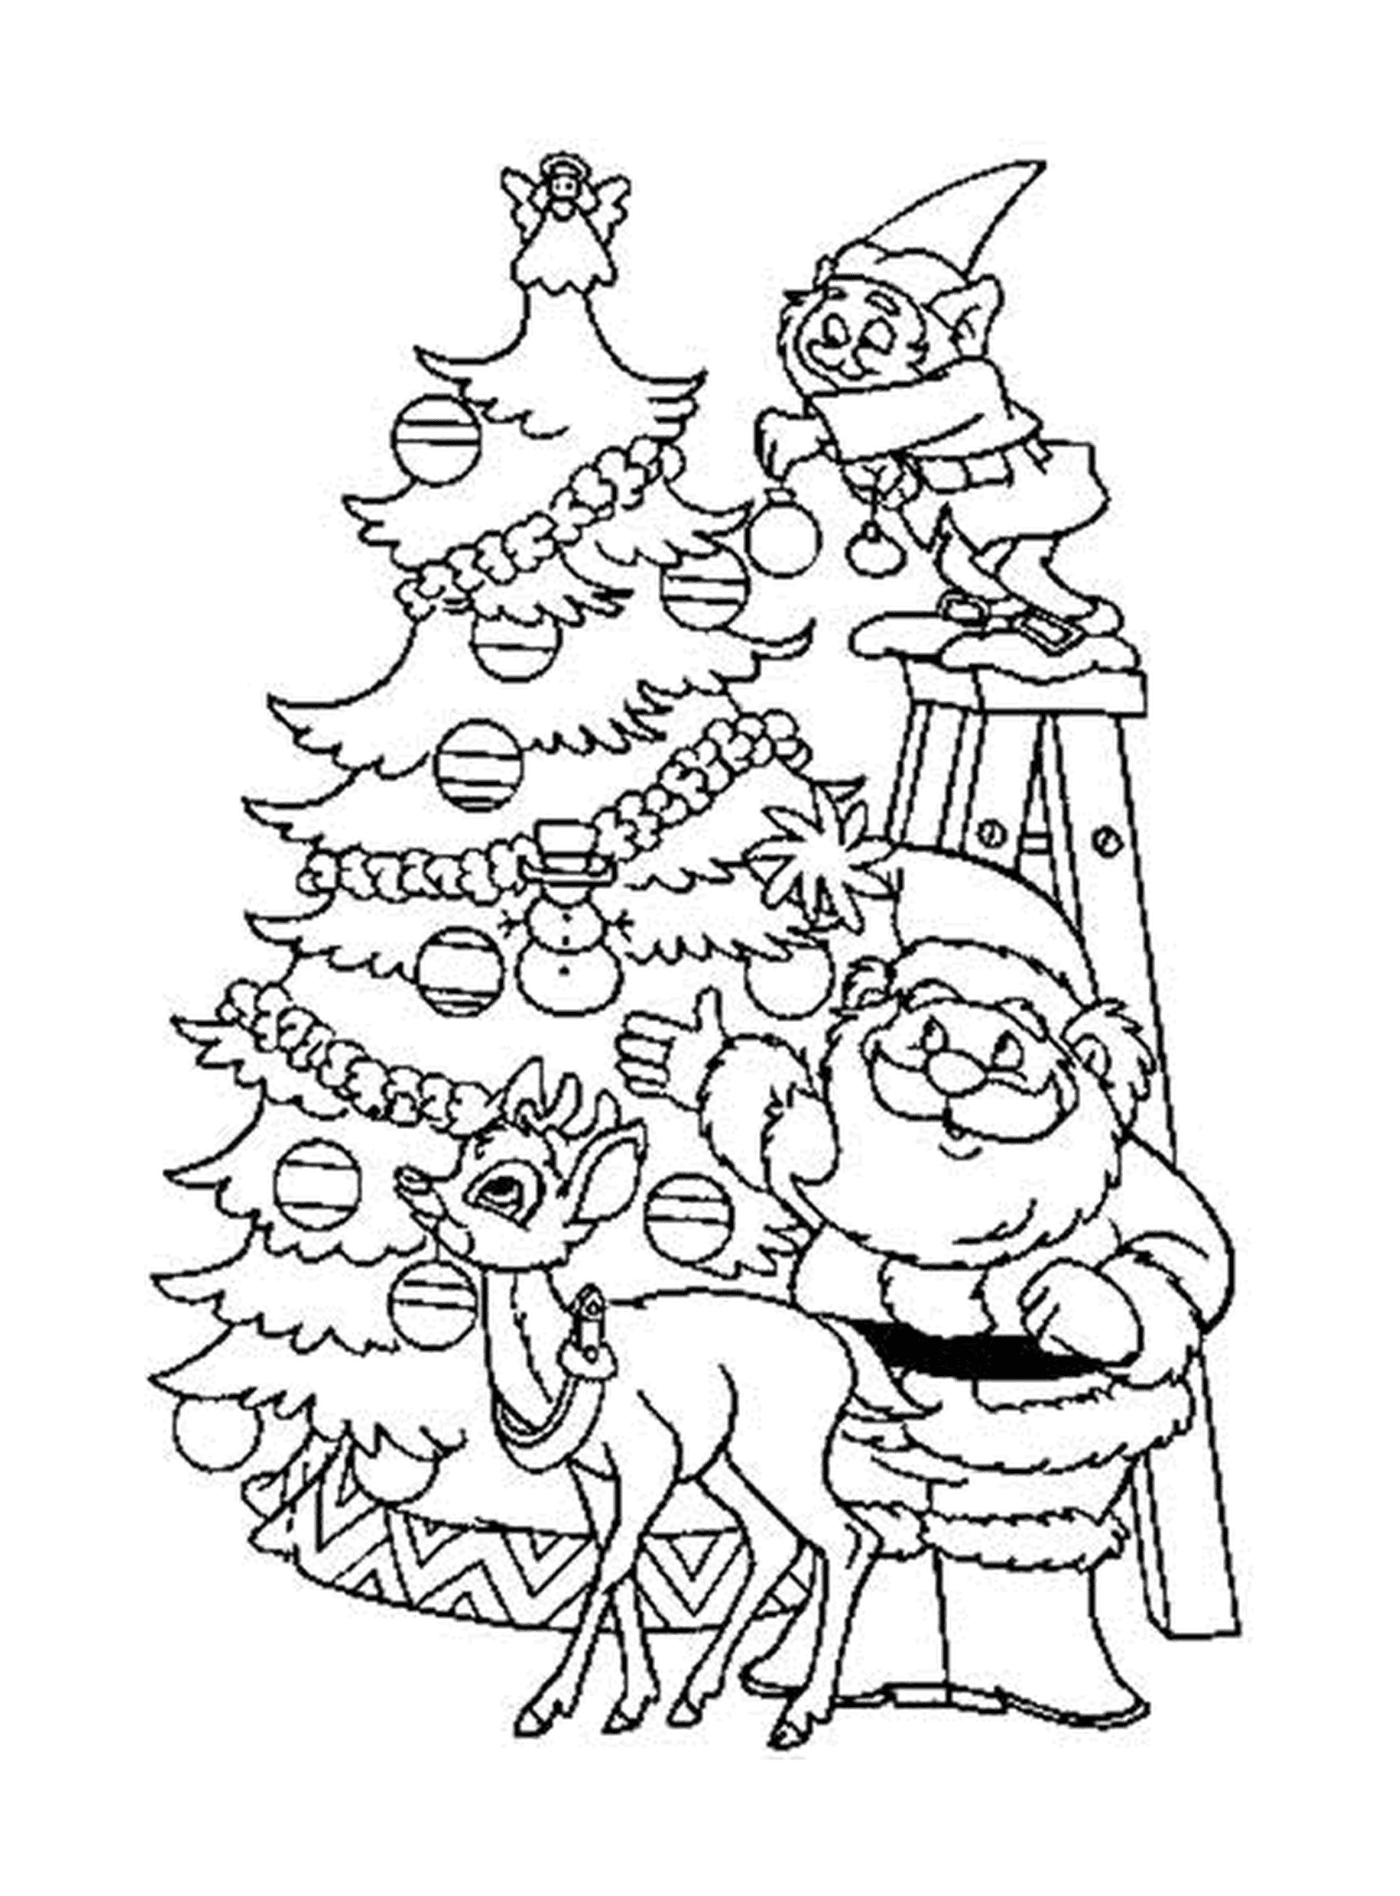  Санта Клаус, олень и лося украшают красивое дерево 